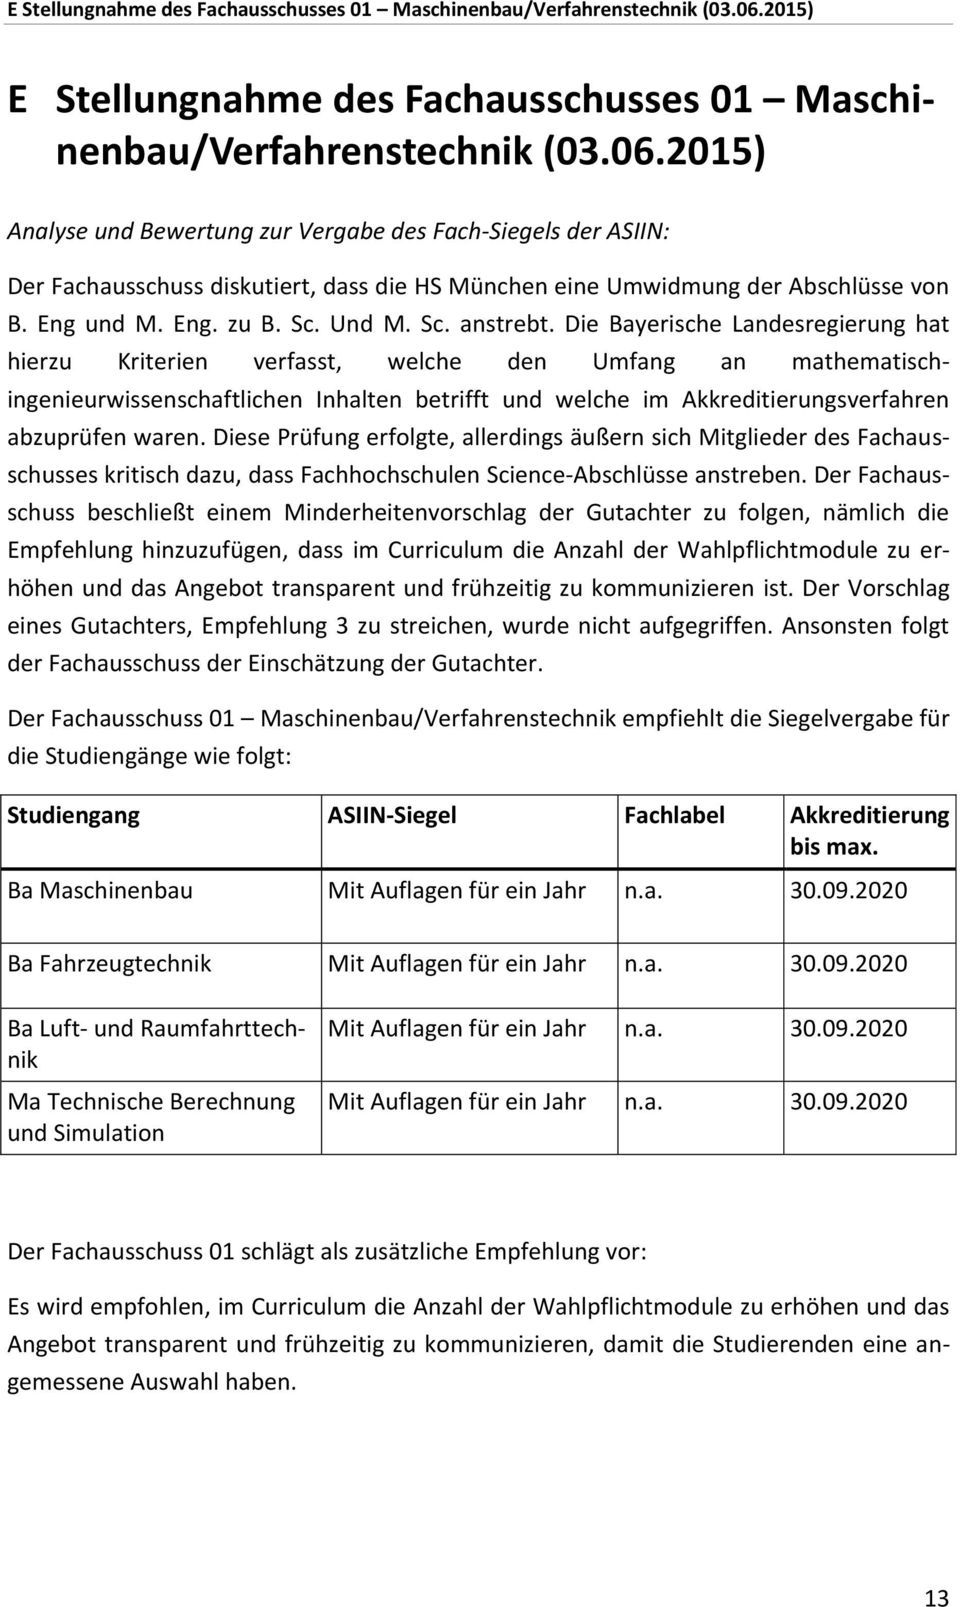 Die Bayerische Landesregierung hat hierzu Kriterien verfasst, welche den Umfang an mathematischingenieurwissenschaftlichen Inhalten betrifft und welche im Akkreditierungsverfahren abzuprüfen waren.